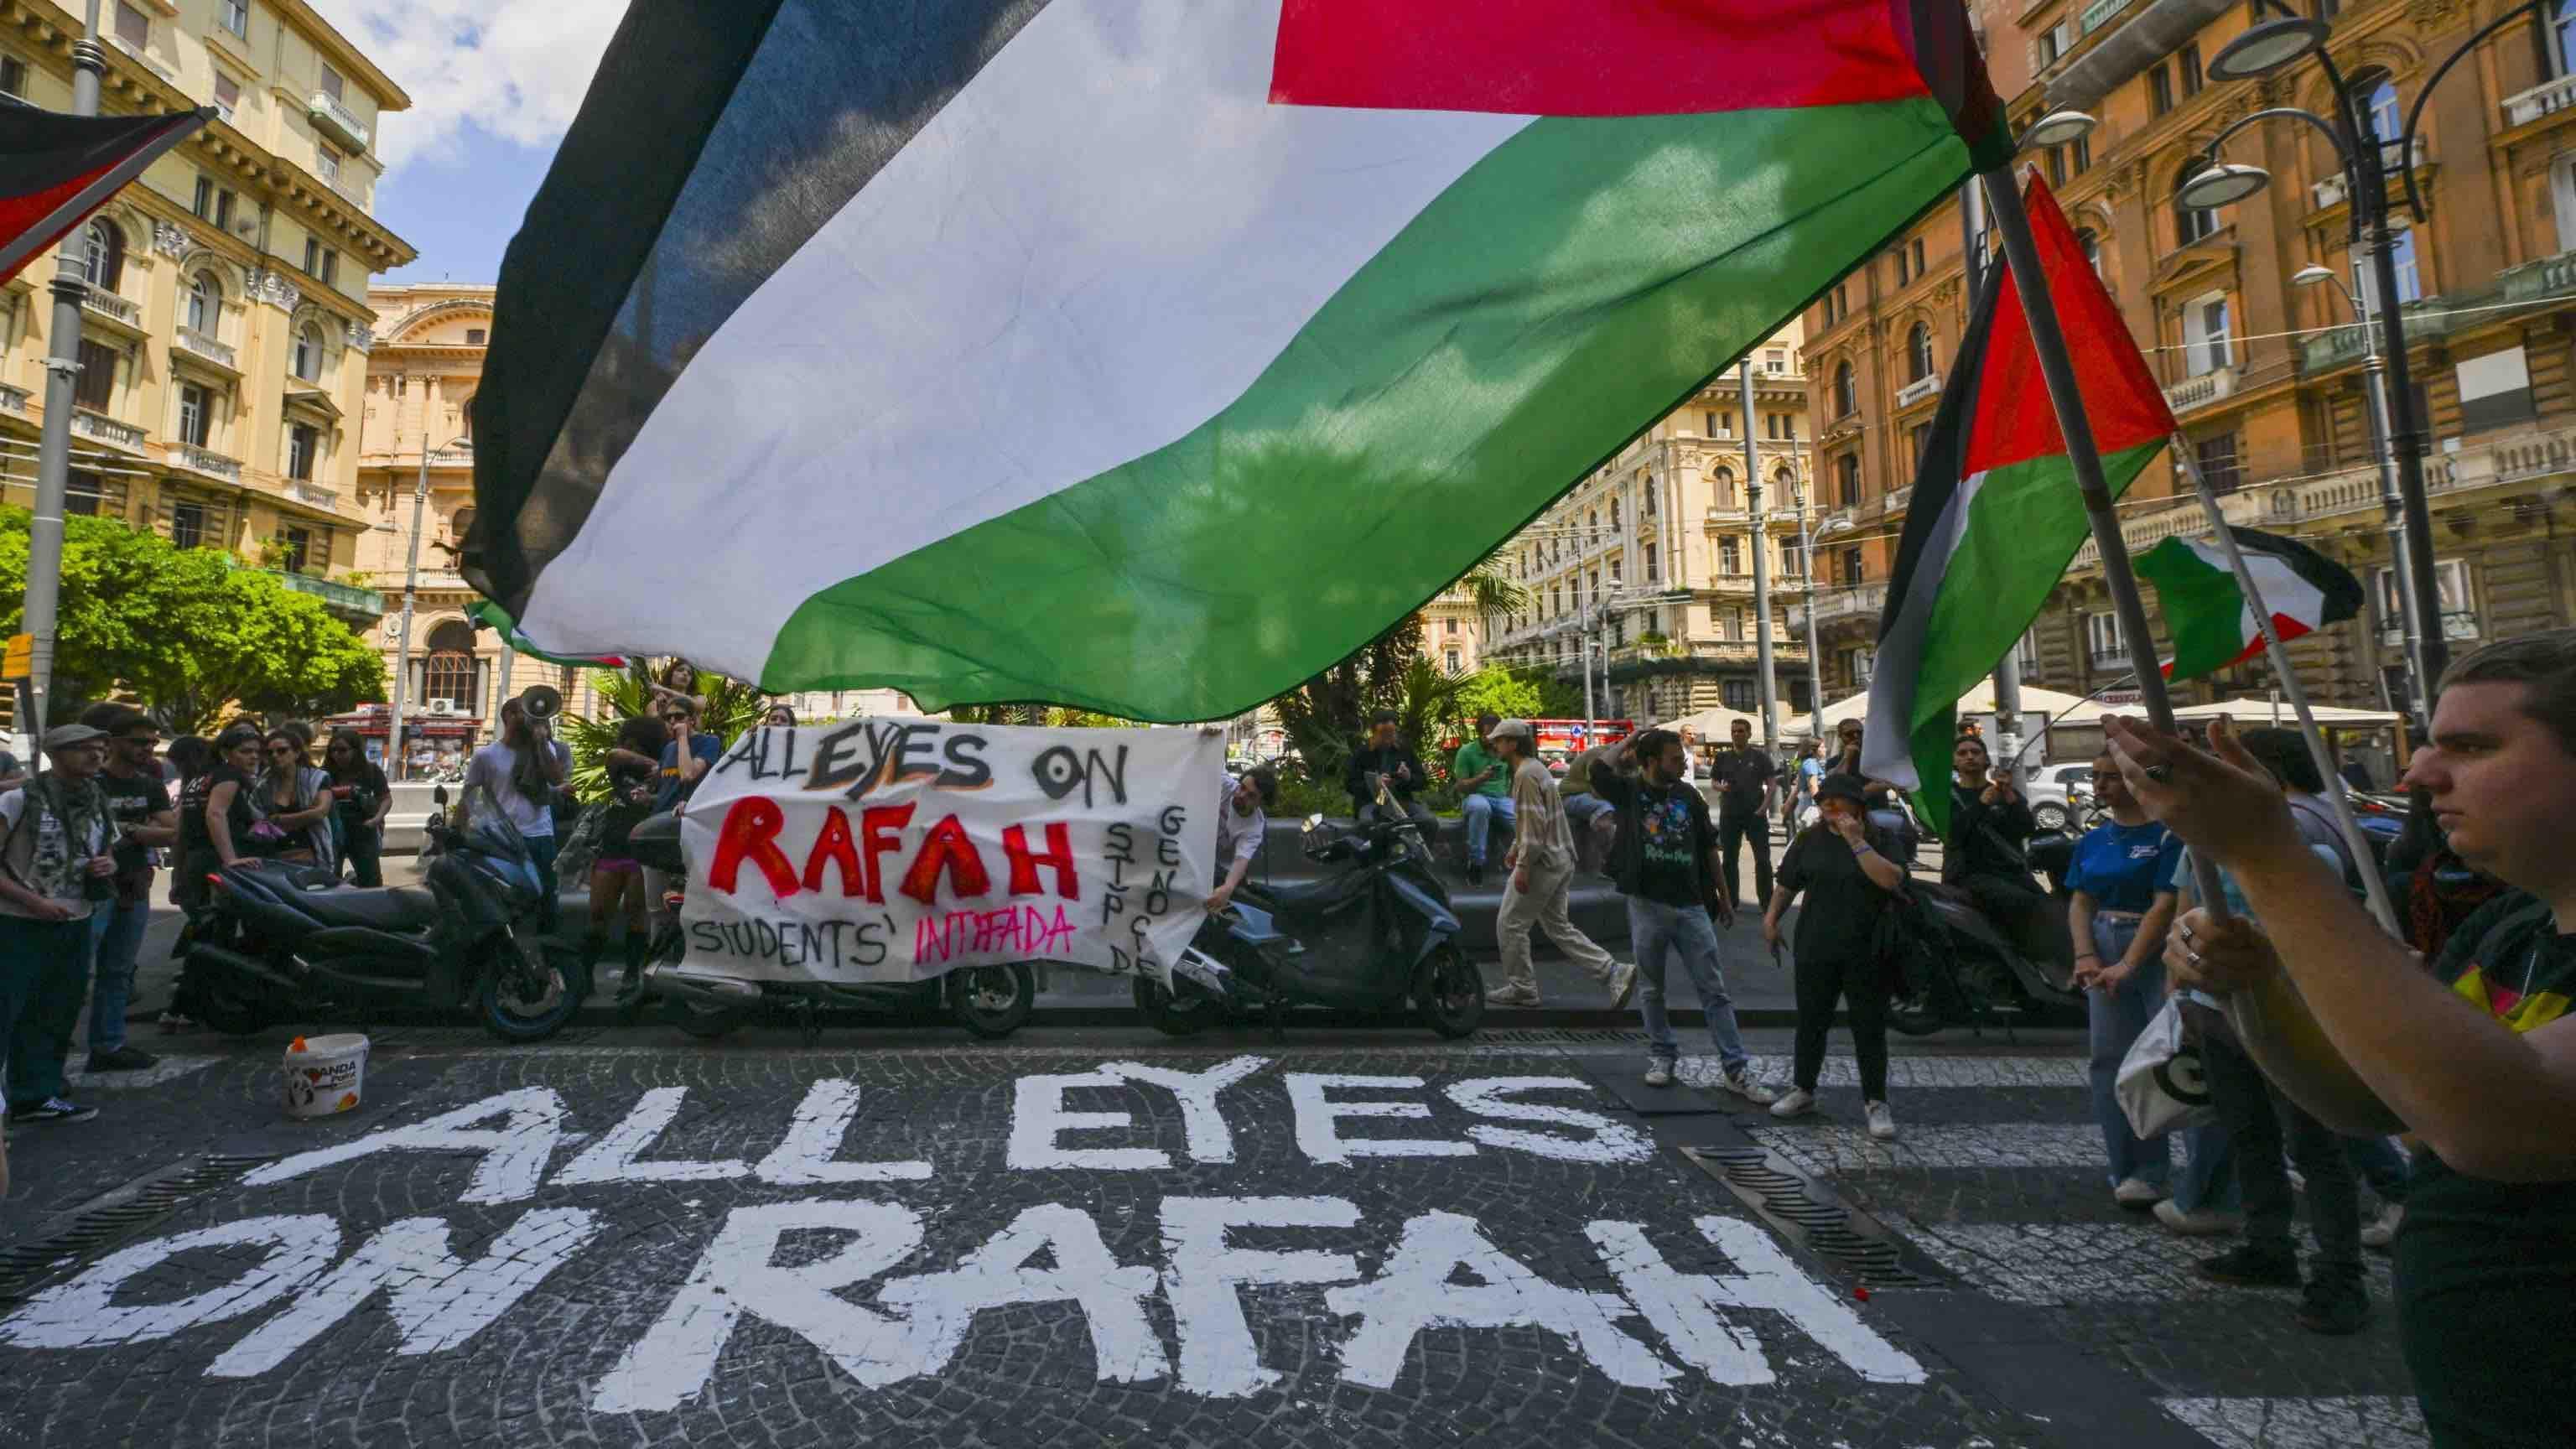 Estudiantes propalestinos en Nápoles protestan frente a una empresa de logística israelí, con la frase "Todos los ojos puestos en Rafah" pintada en el suelo.